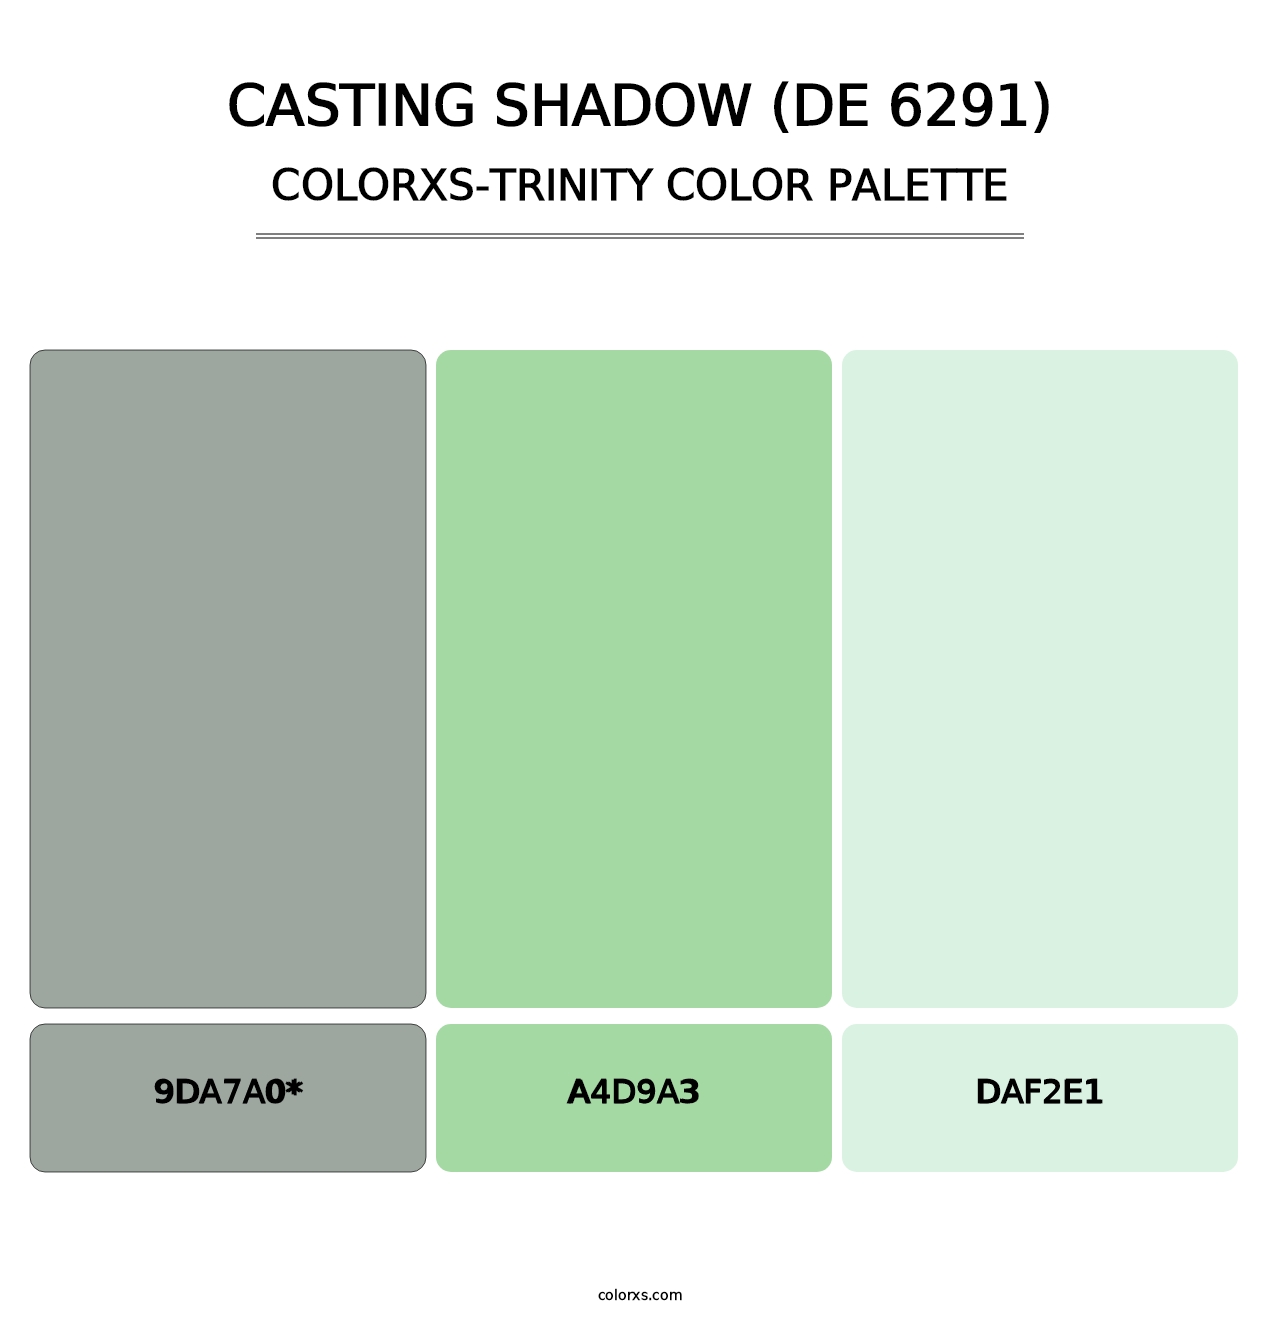 Casting Shadow (DE 6291) - Colorxs Trinity Palette